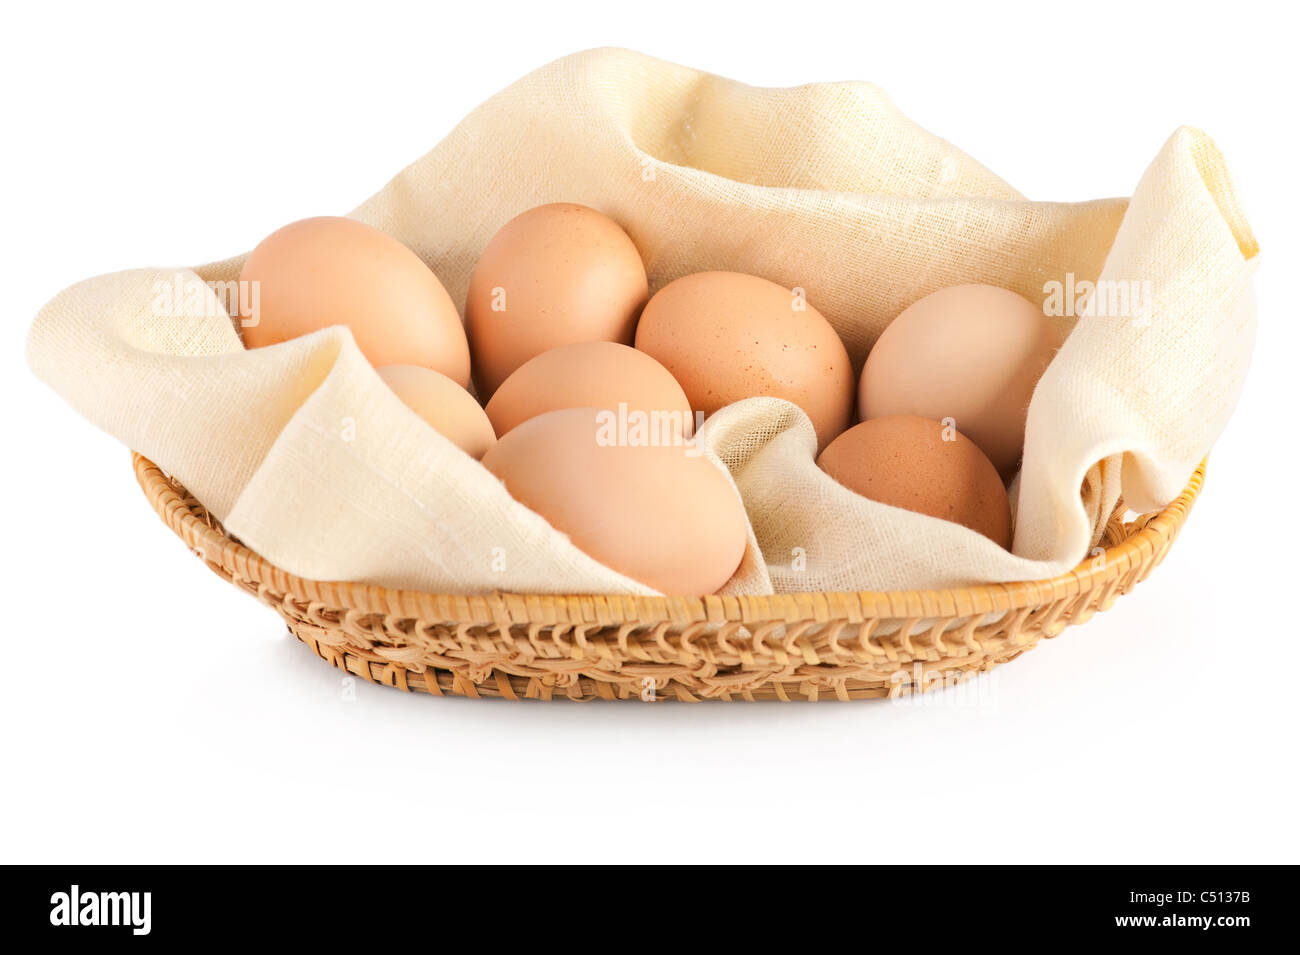 Makro von braunen Eiern in hölzernen Korb auf Leinwand. Weißer Hintergrund, geringe Schärfentiefe Stockfoto